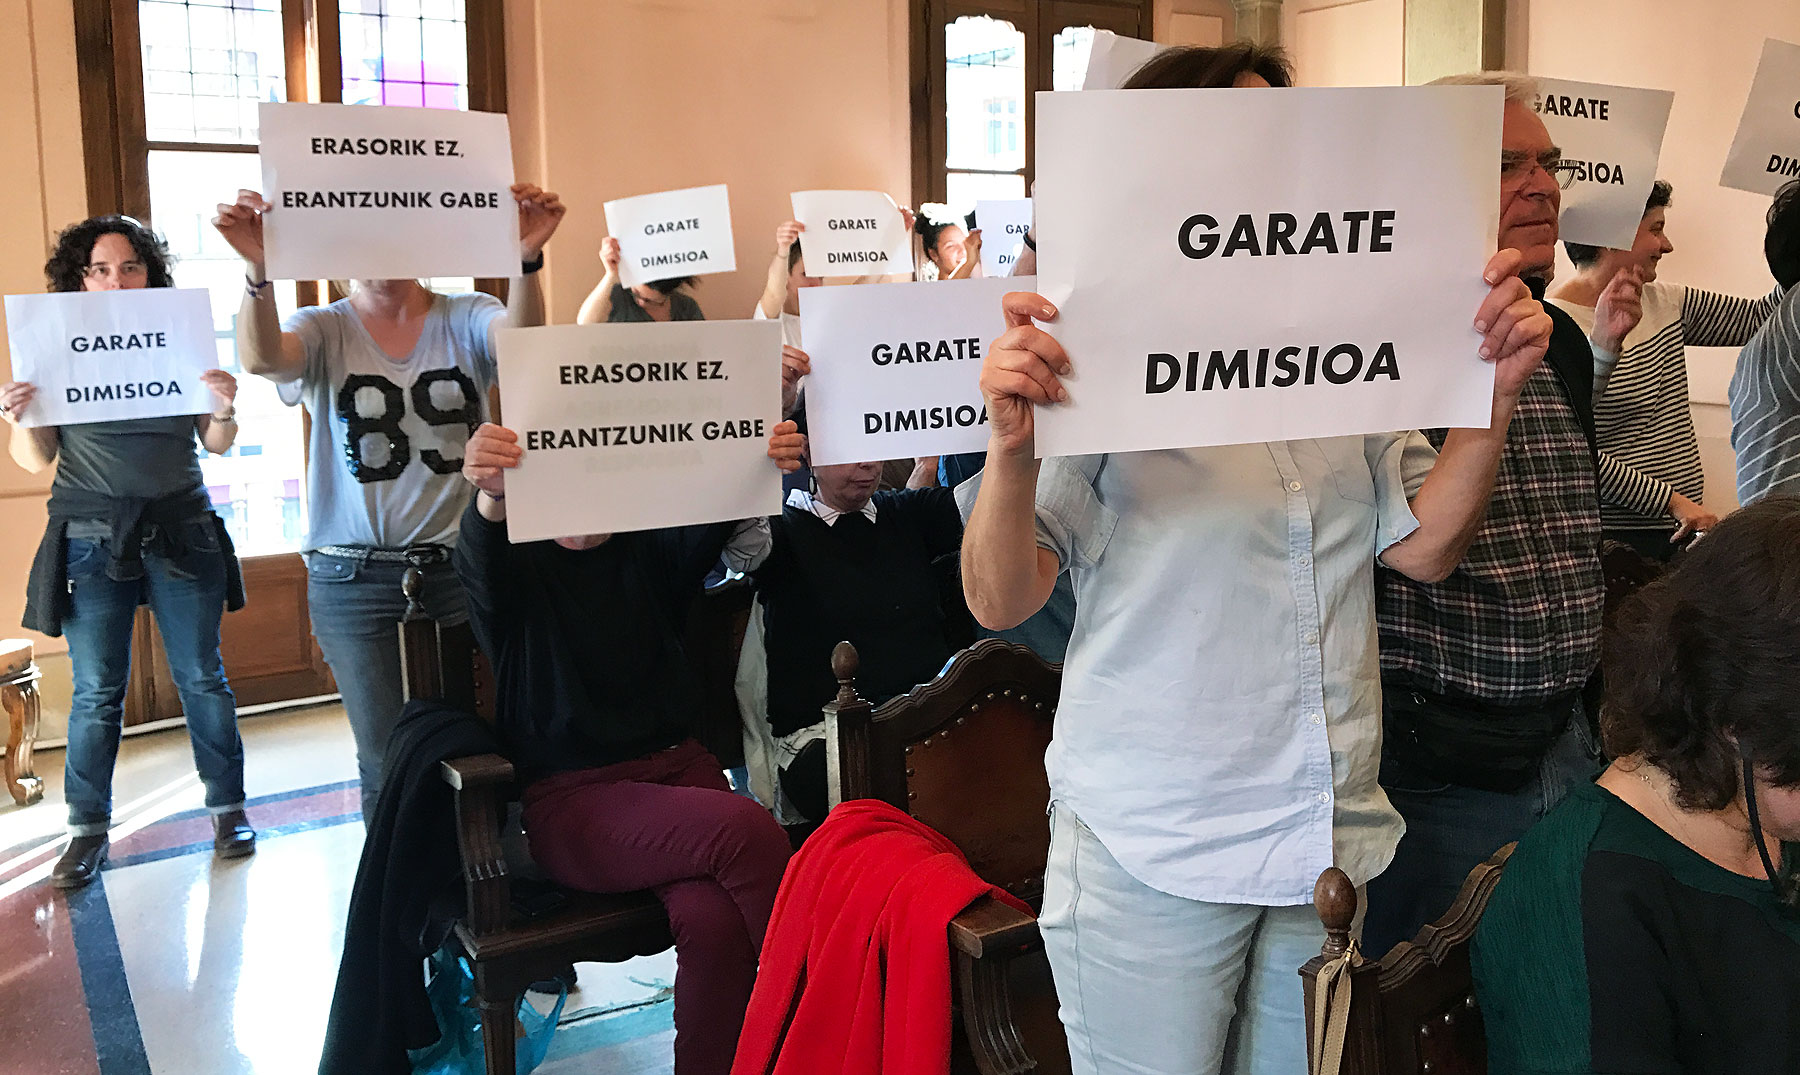 La Audiencia de Bizkaia archiva definitivamente la denuncia contra el concejal del PP Fran Garate